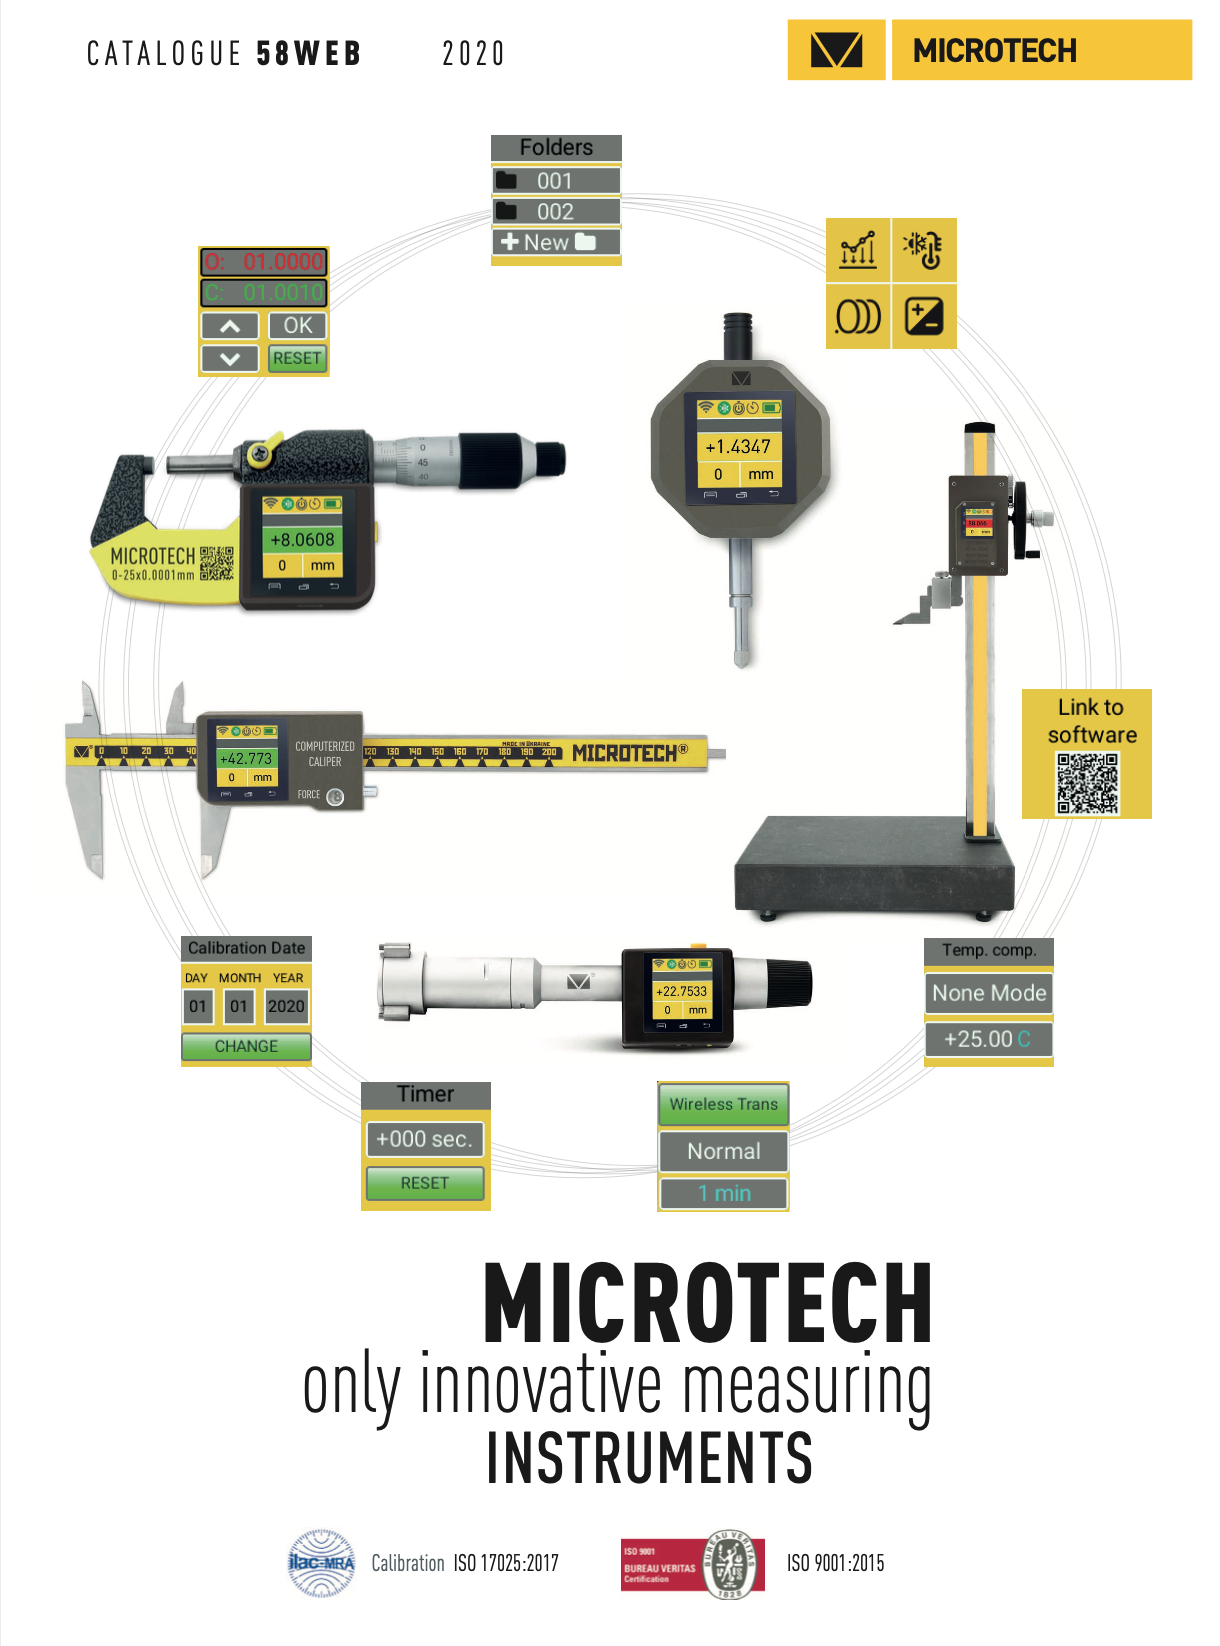 microtech katalog narzędzi pomiarowych